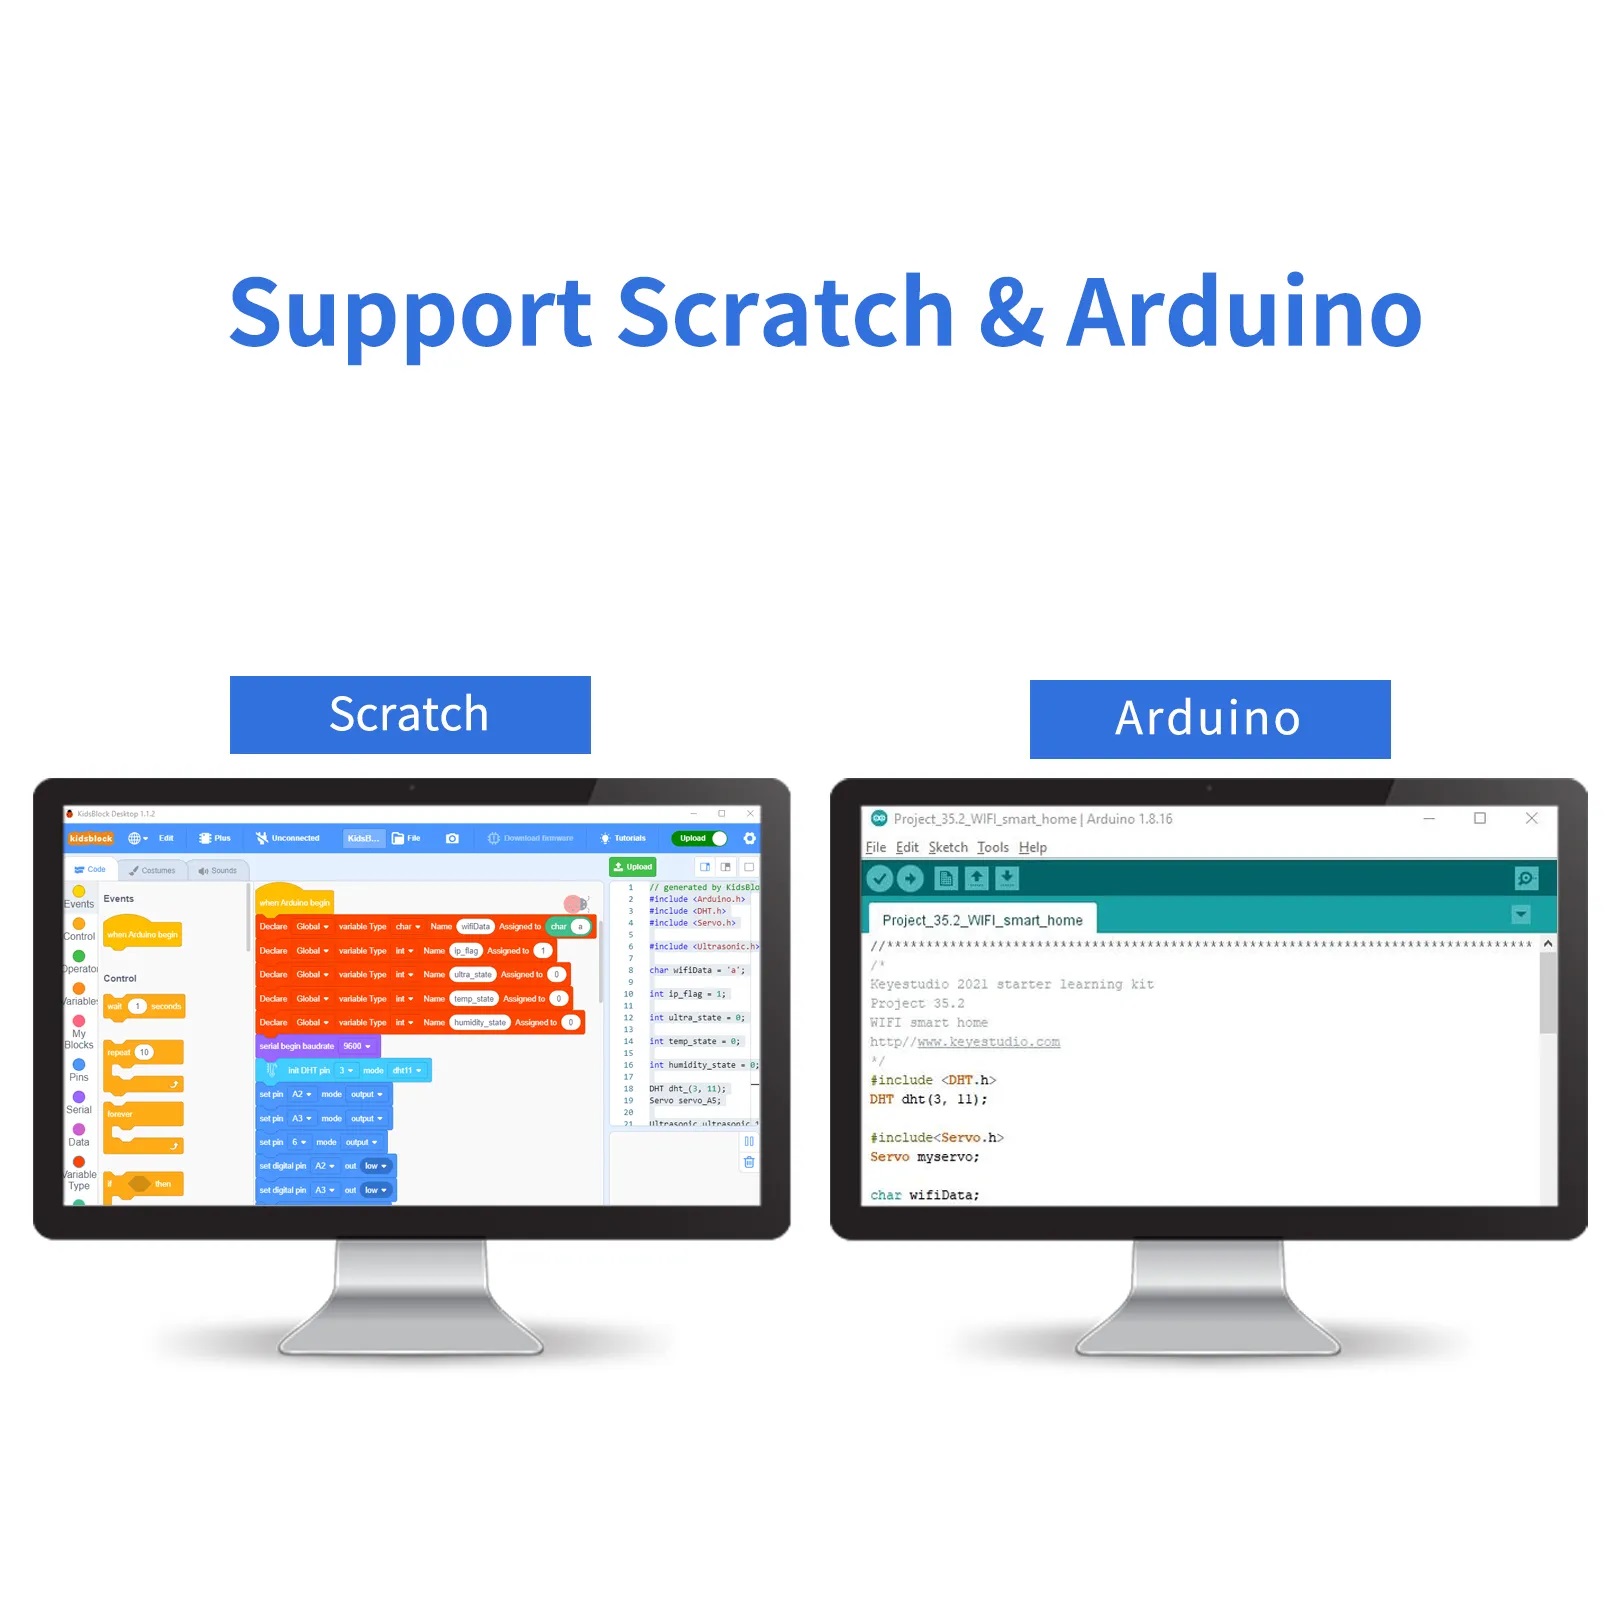 Keyestudio Basic Starter Kit for Arduino 20 projects | why.gr